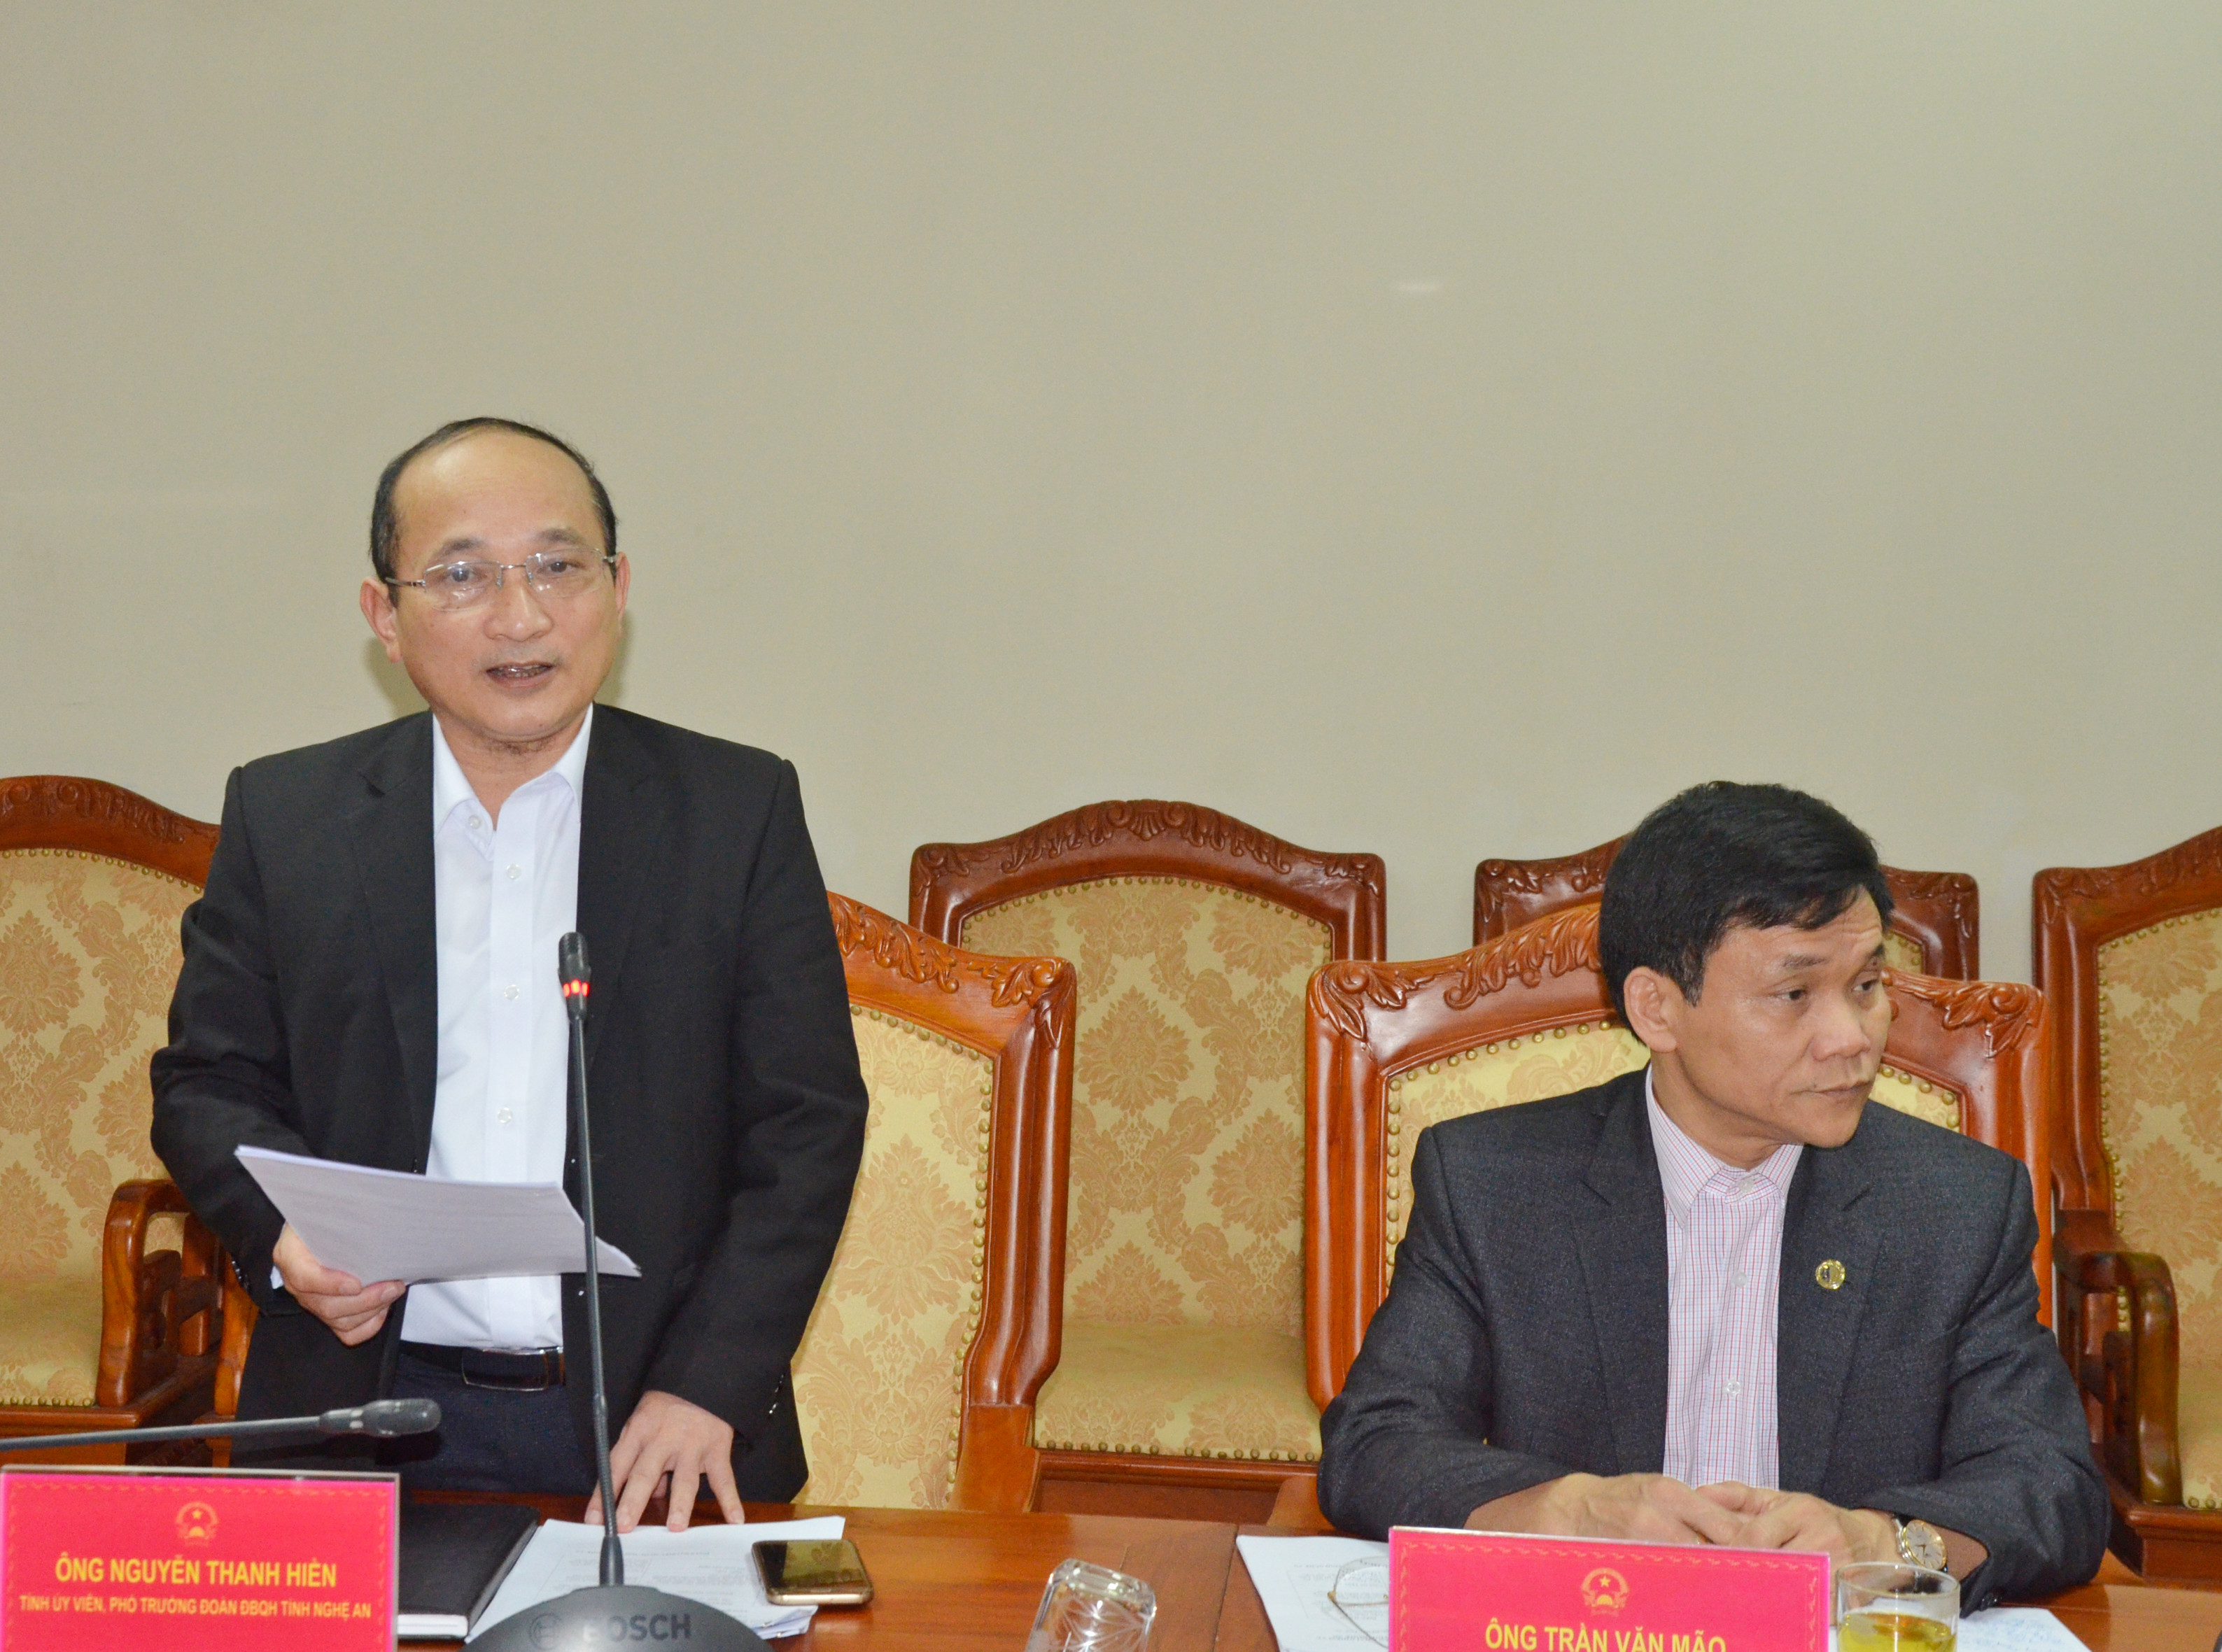 Ông Nguyễn Thanh Hiền- Phó Trưởng Đàon ĐBQH tỉnh báo cáo kết quả hoạt động của Đoàn năm 2017. Ảnh Thanh Lê